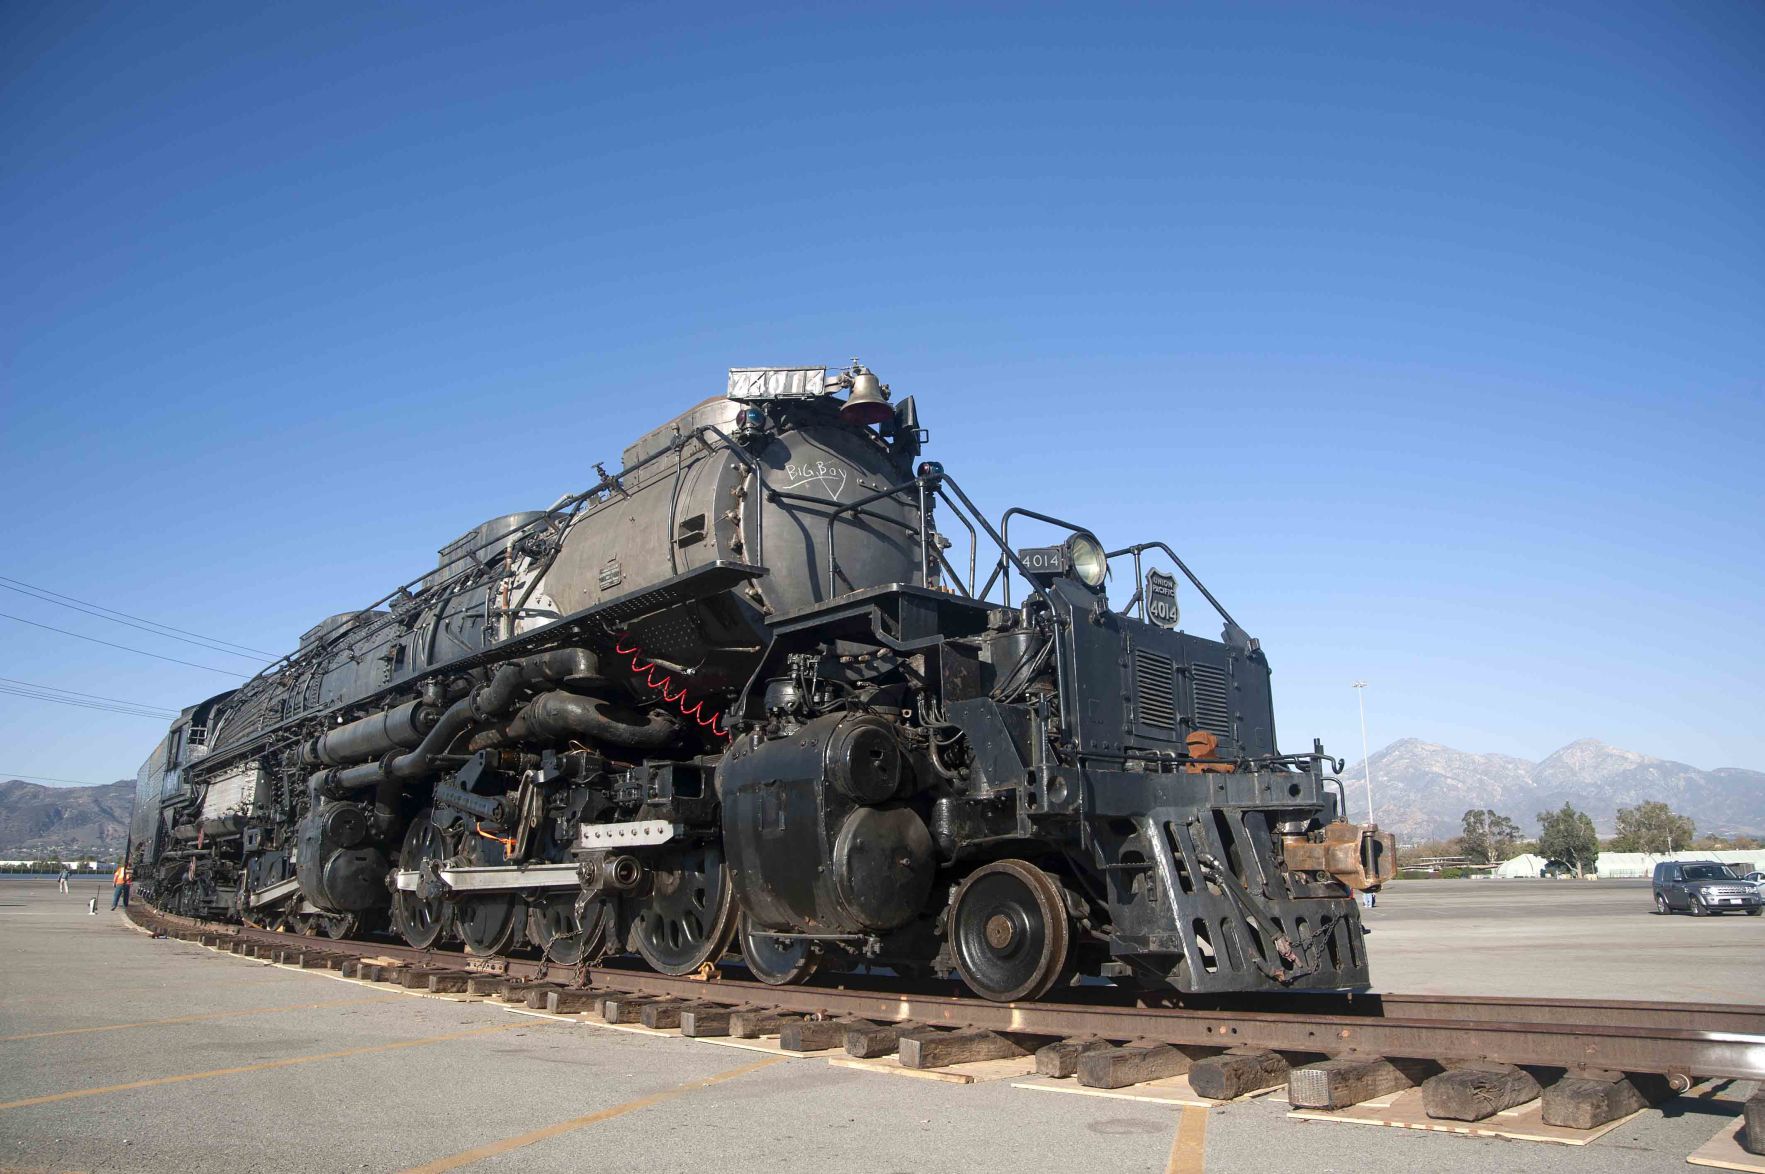 Big steam train фото 112